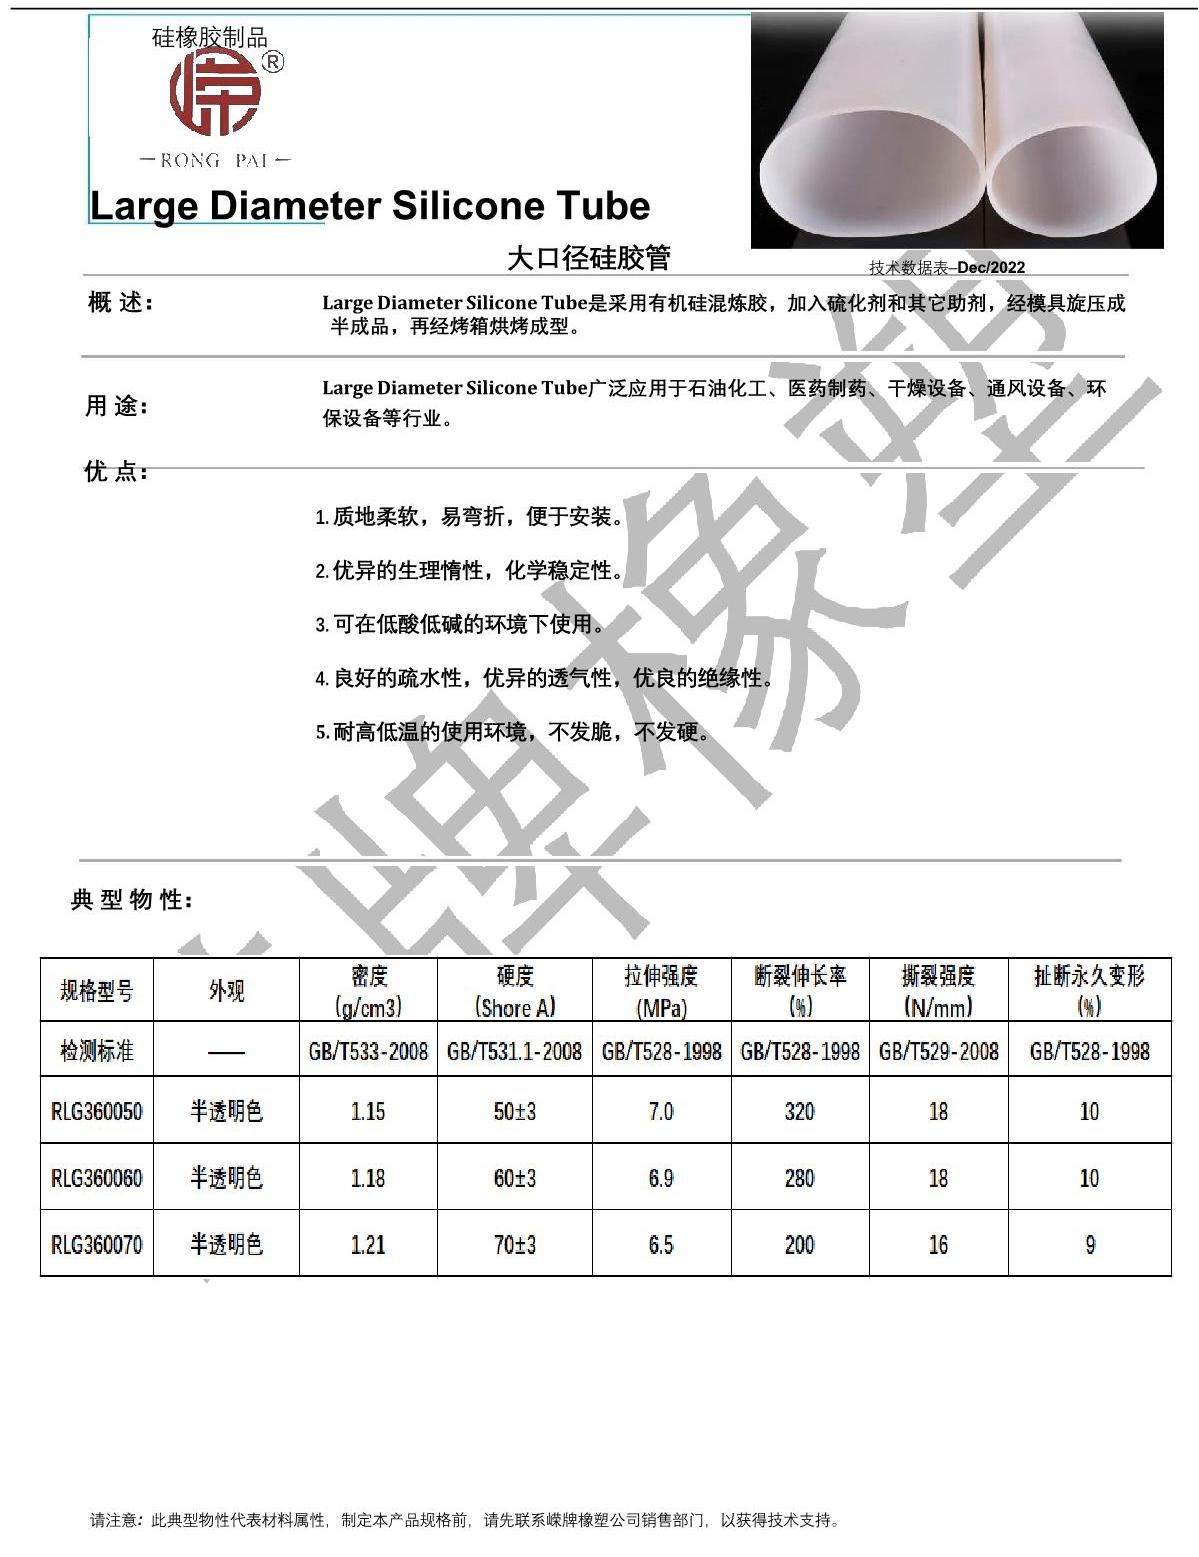 大口徑硅膠管產品說明_1.JPG